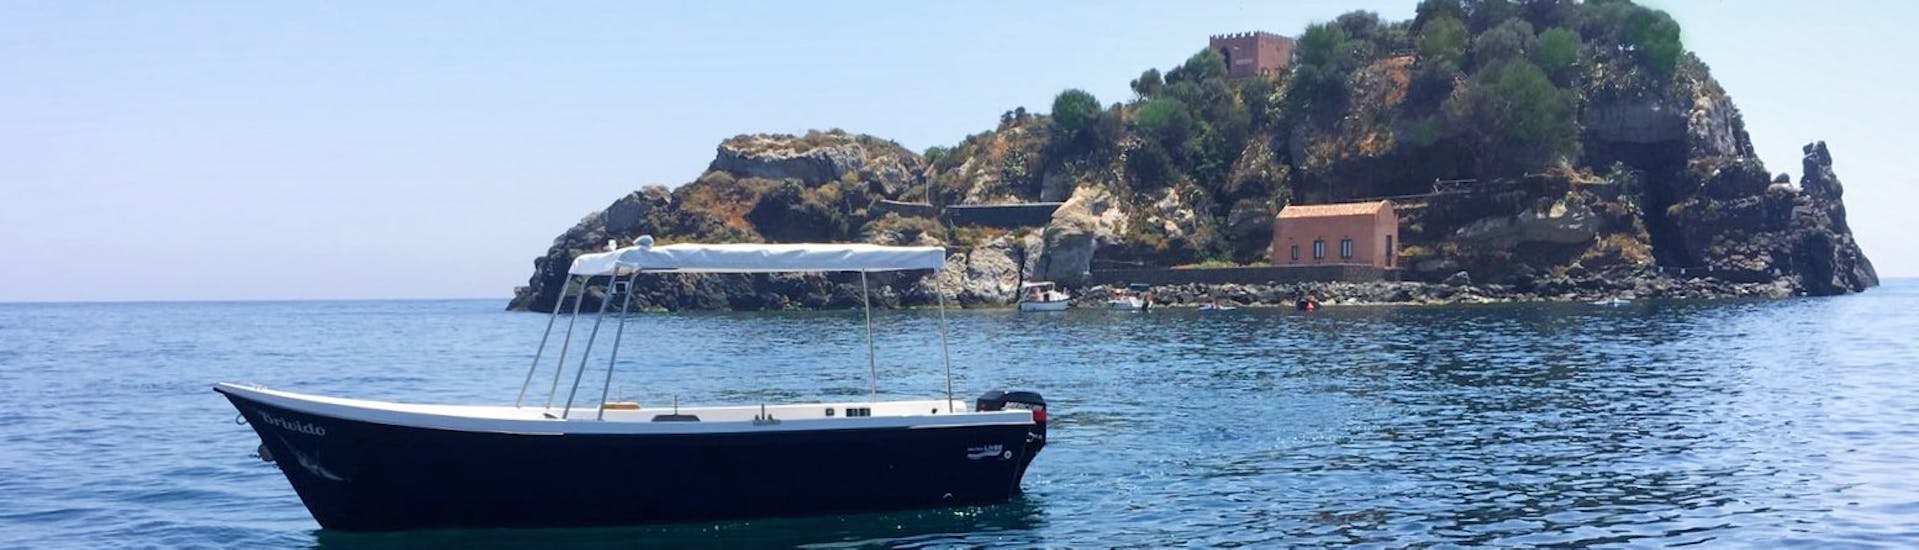 De boot van Navigando per Trezza in zee tijdens de Boottocht langs de Riviera van de Cycloop.